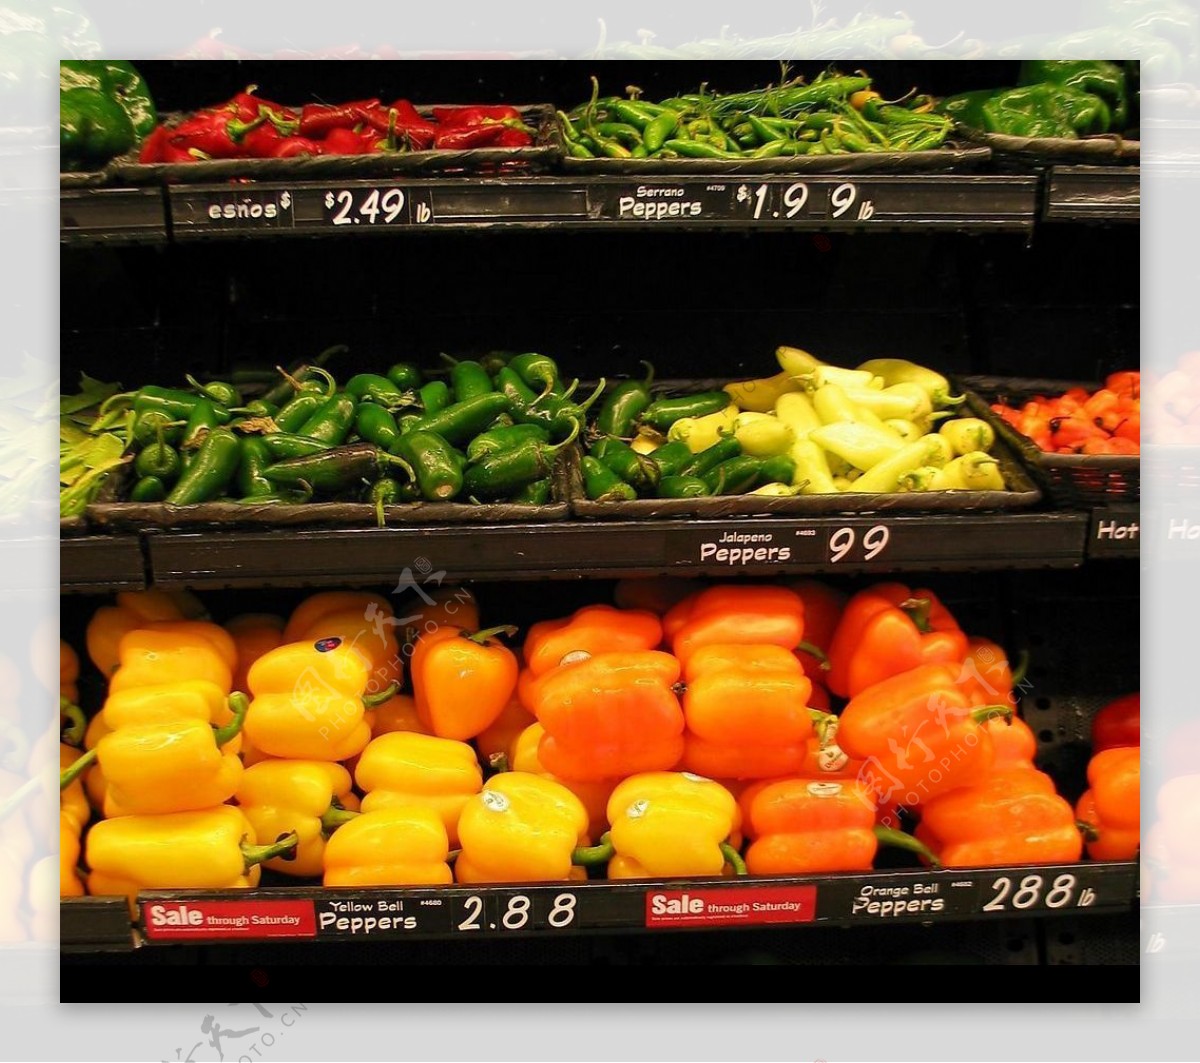 蔬菜超级市场货架图片